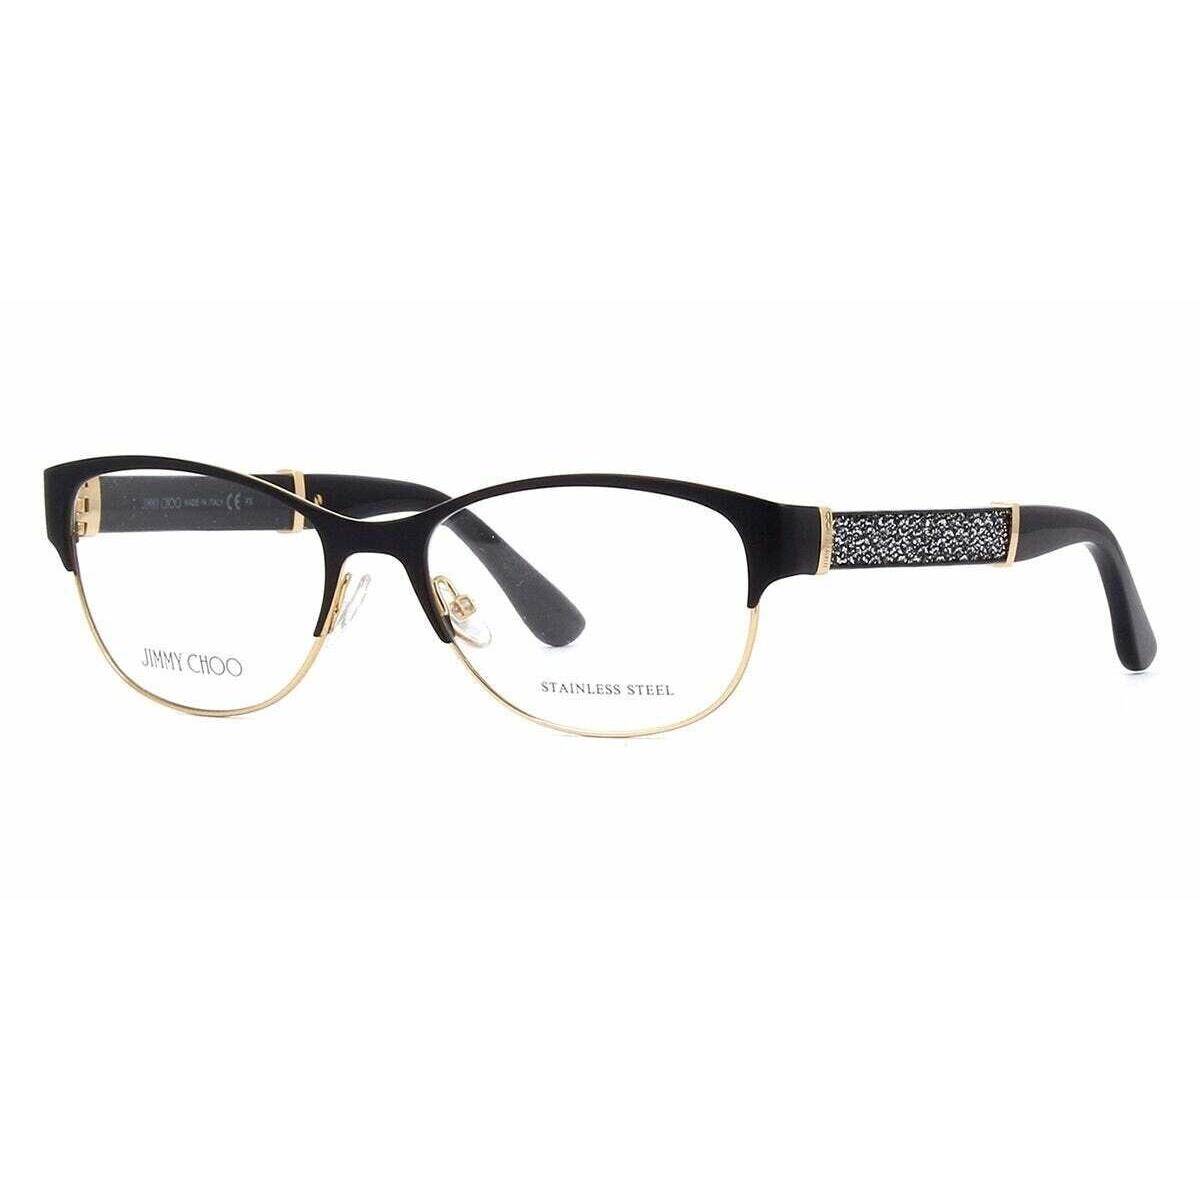 Jimmy Choo JC 180 17J Eyeglasses Matte Black Glitter Frame 53mm